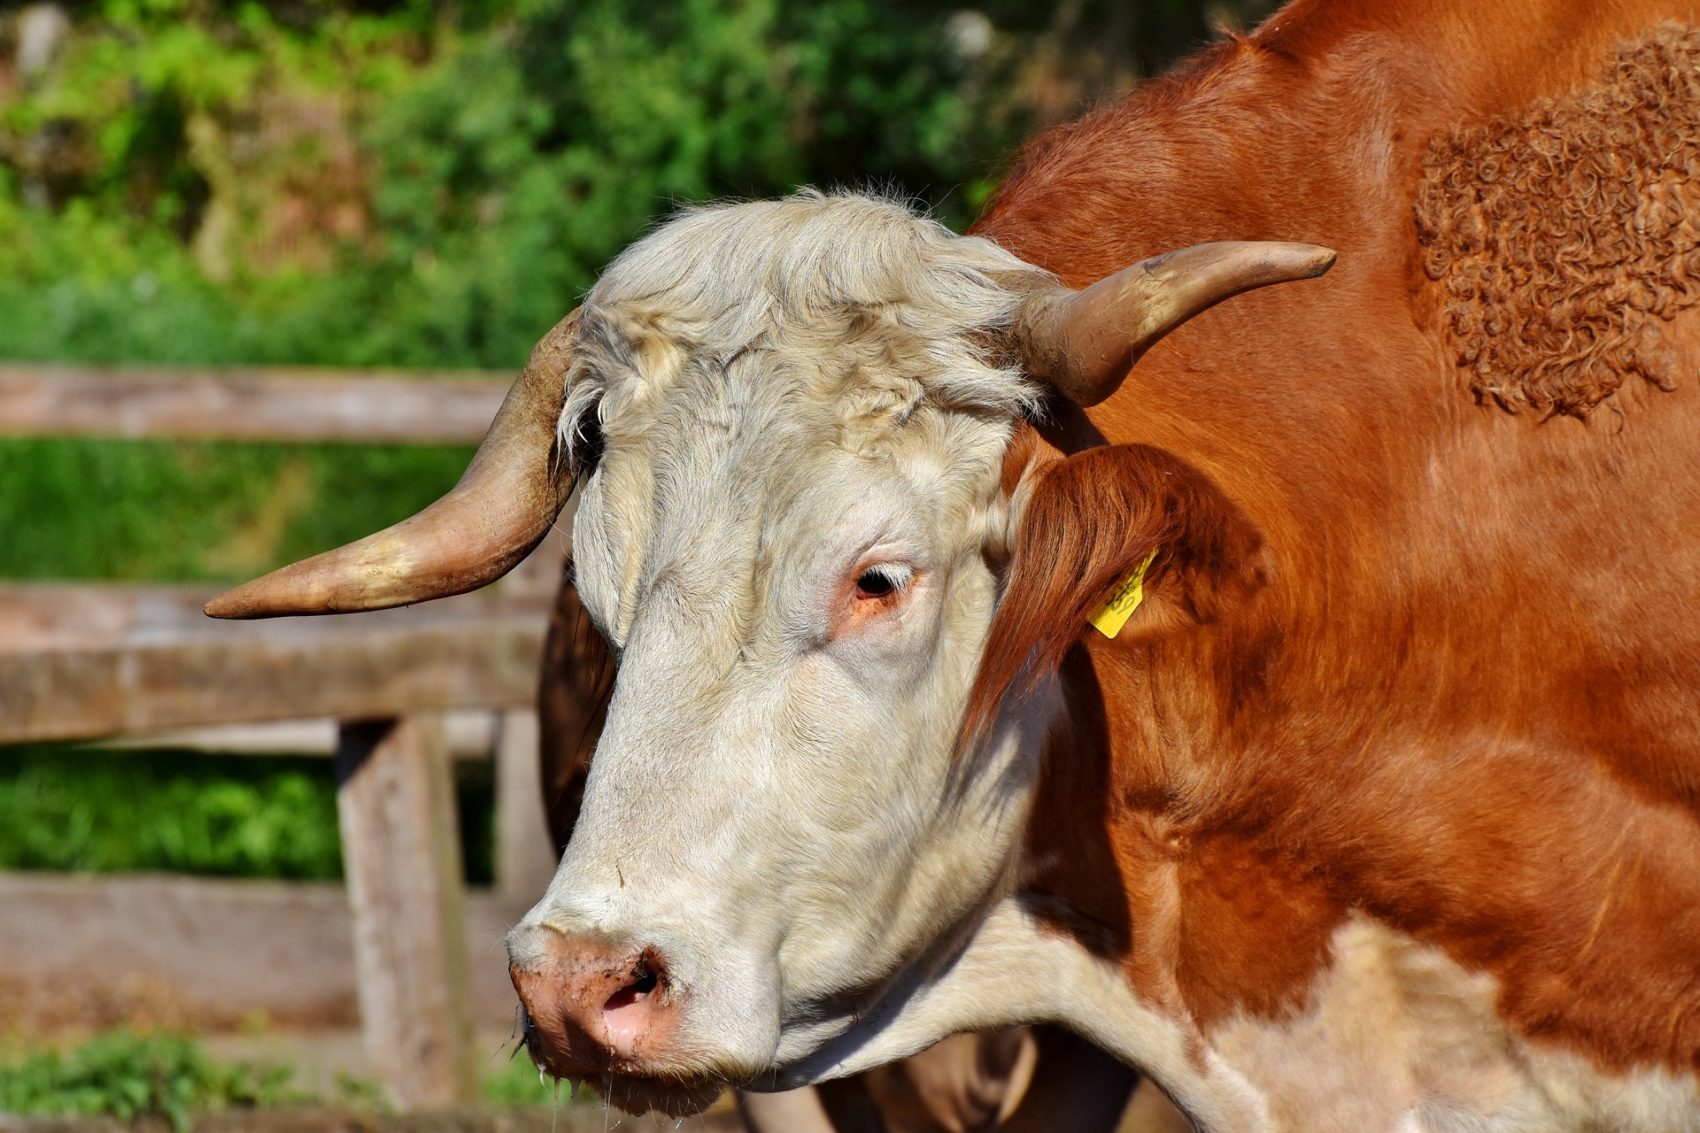 Der Landwirt wollte den Stier im Stall seines Nachbarn einfangen, wurde vom Tier jedoch attackiert und unbestimmten Grades verletzt.